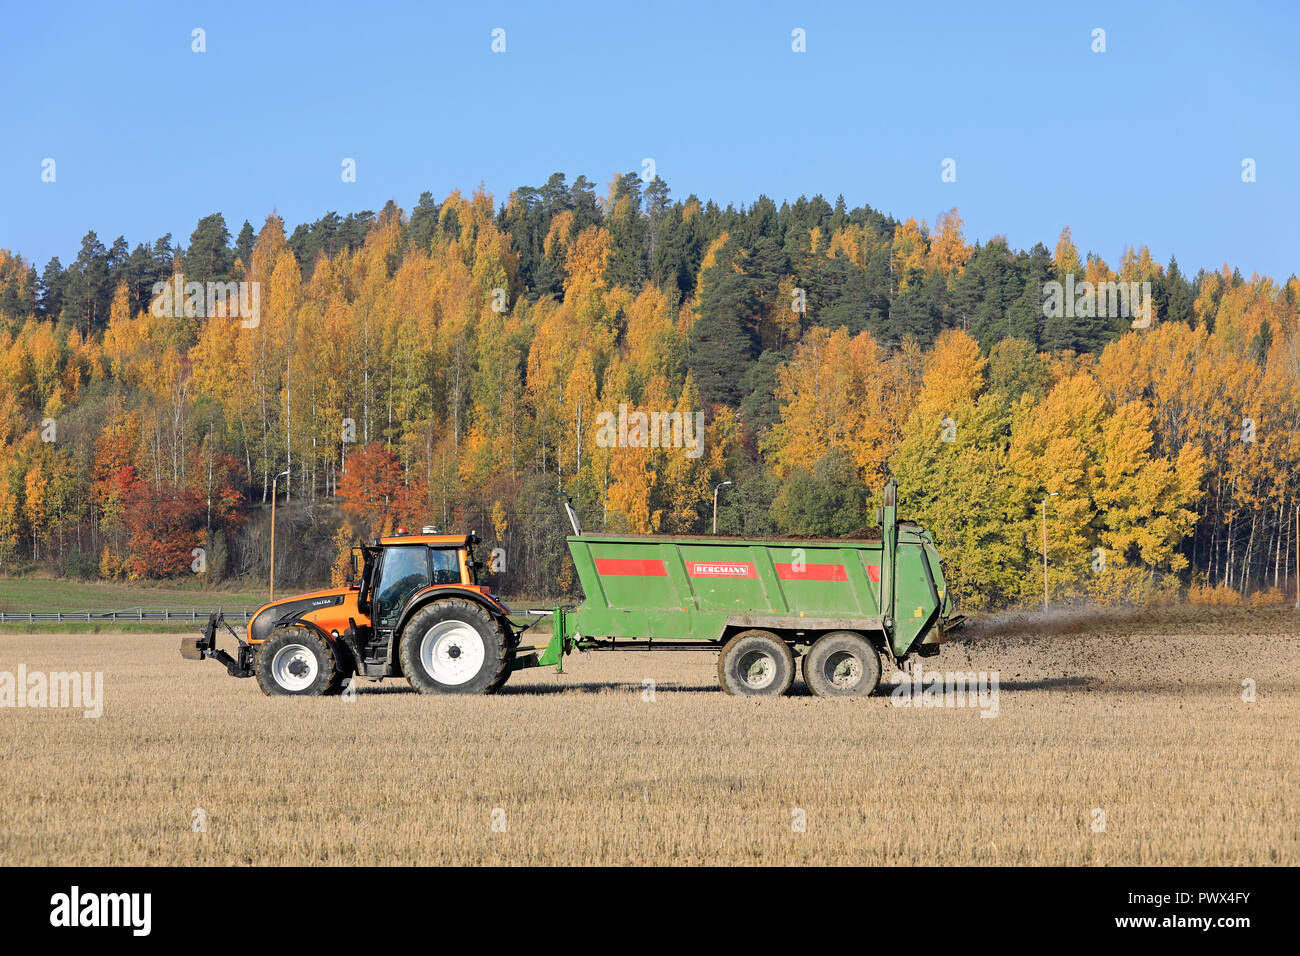 Salo, Finnland - Oktober 14, 2018: Landwirt Ausbringung von Gülle auf Stoppeln Feld mit Valtra Traktor und Bergmann Streuer an einem schönen Tag im Herbst. Stockfoto